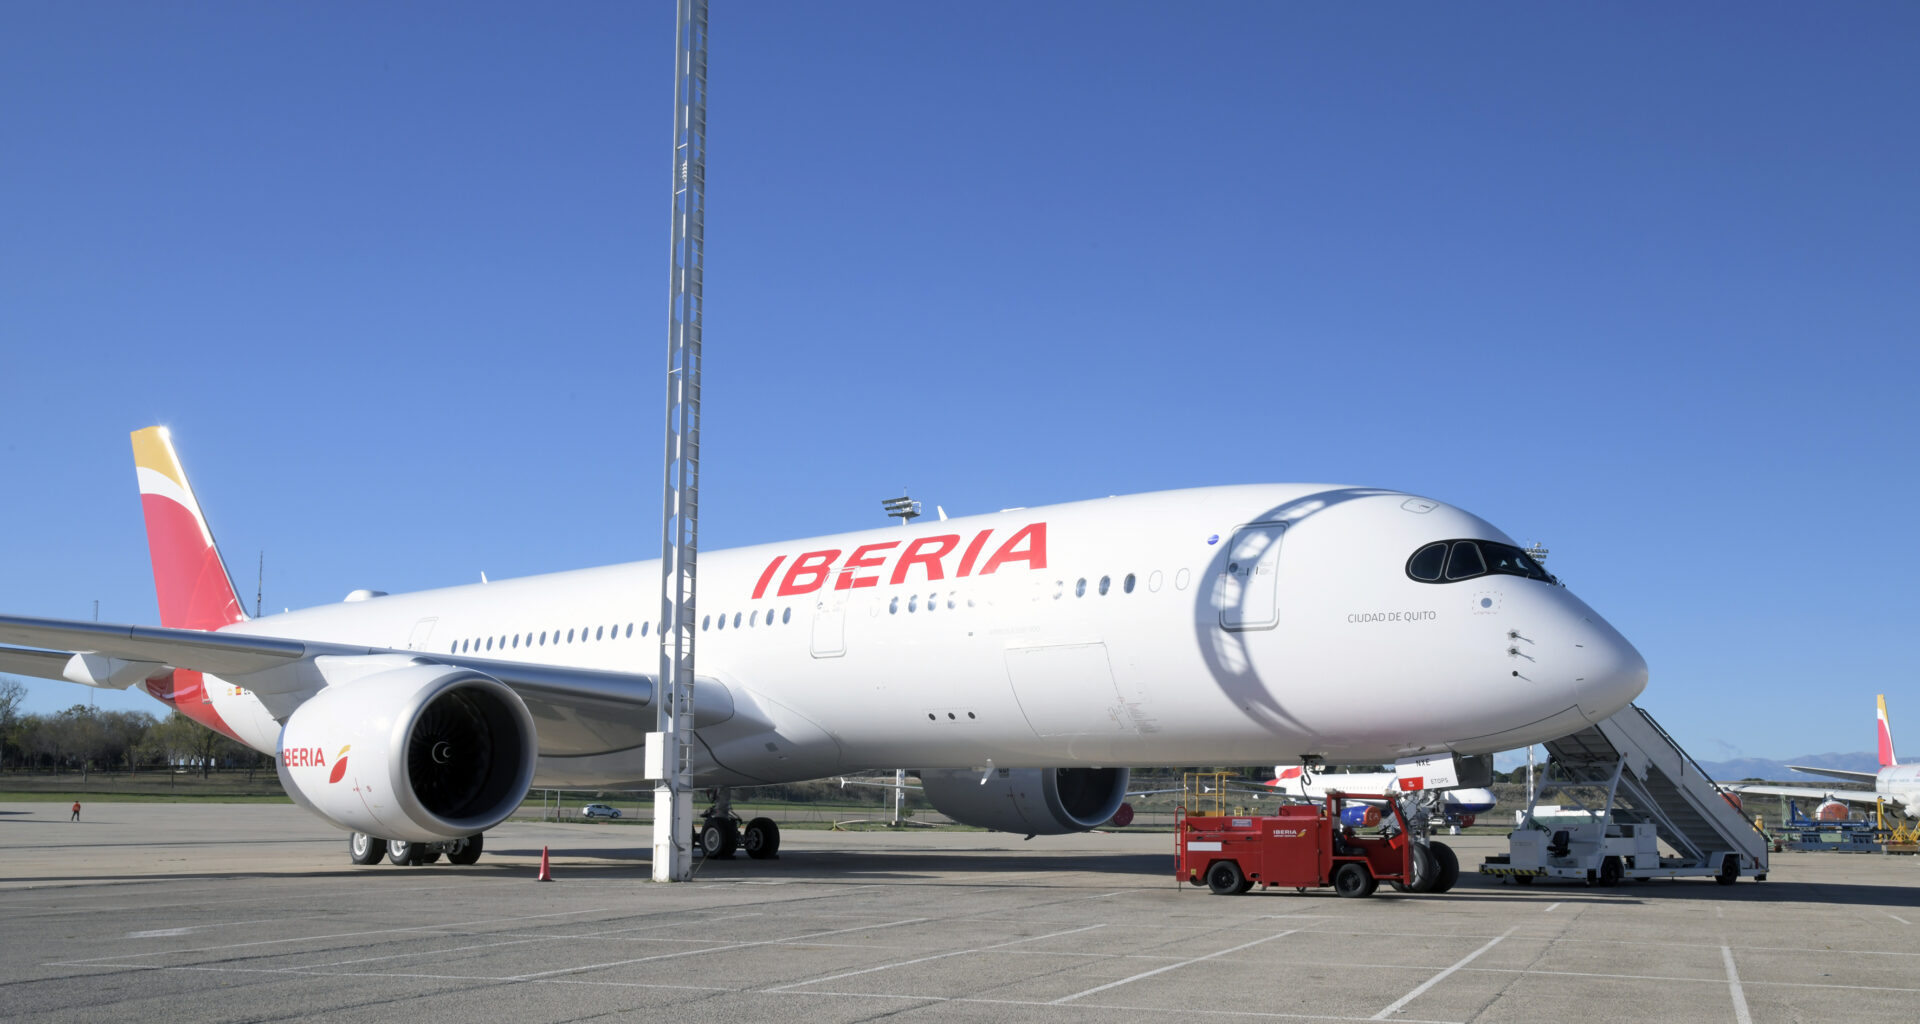 מטוס איירבוס A350 של איבריה